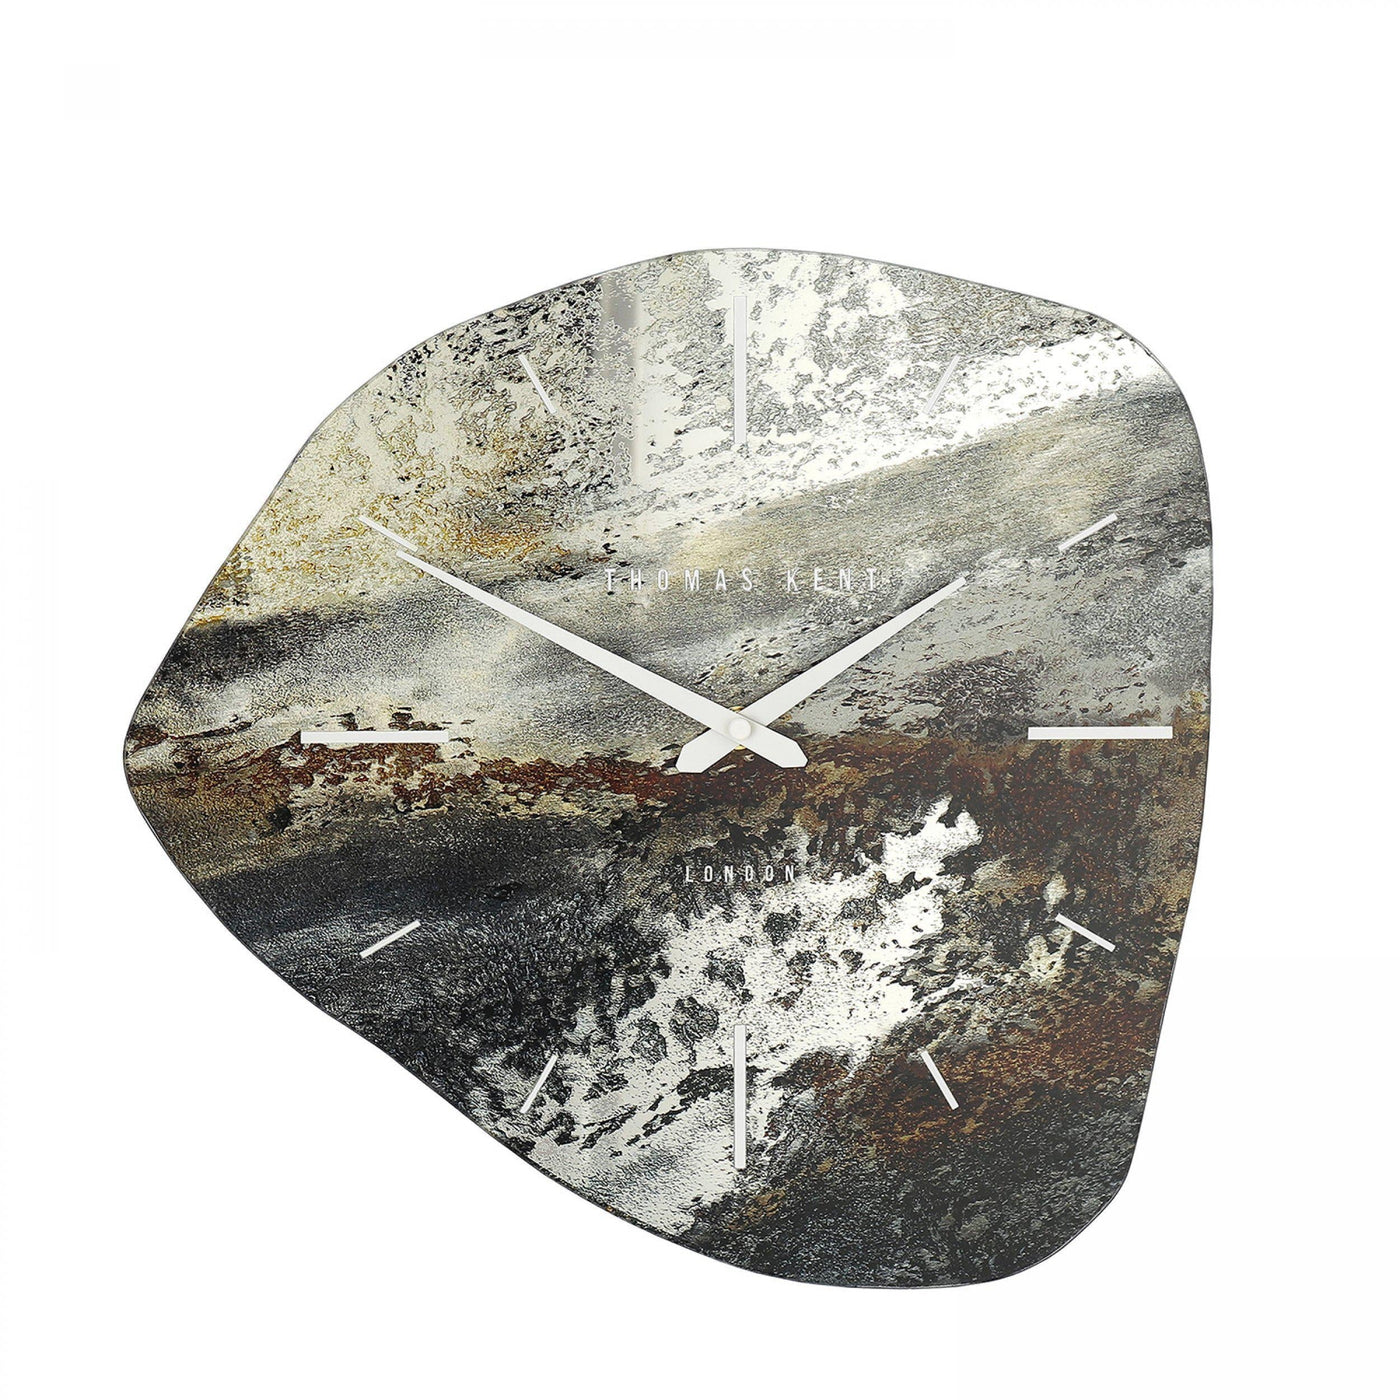 Thomas Kent London. Jewel Wall Clock Mineral - timeframedclocks